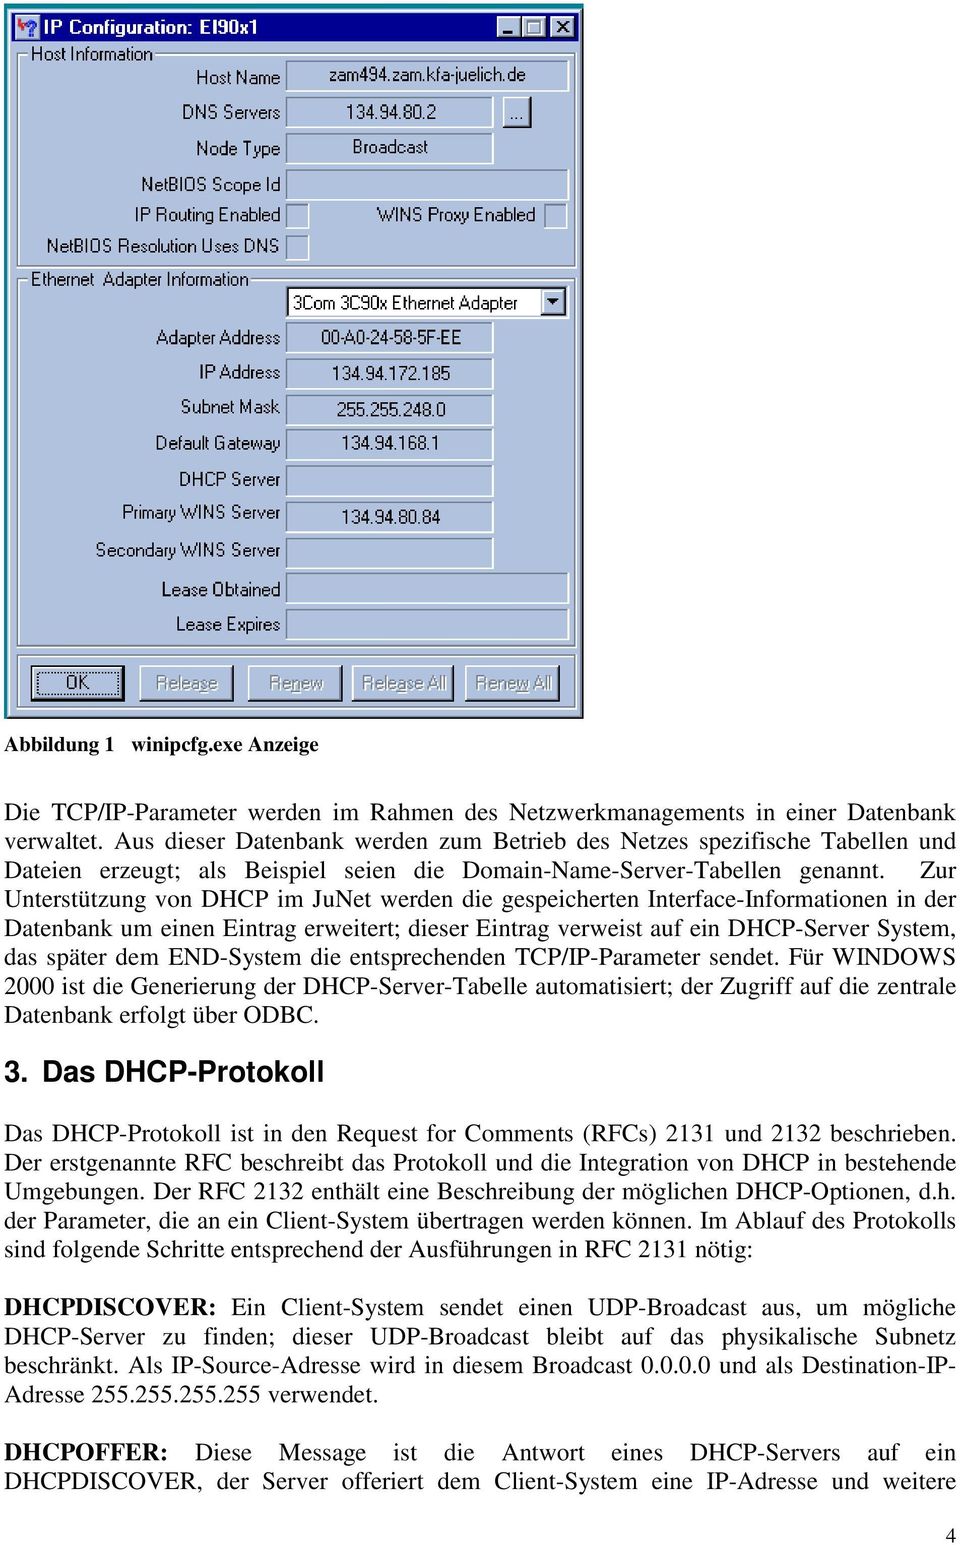 Zur Unterstützung von DHCP im JuNet werden die gespeicherten Interface-Informationen in der Datenbank um einen Eintrag erweitert; dieser Eintrag verweist auf ein DHCP-Server System, das später dem